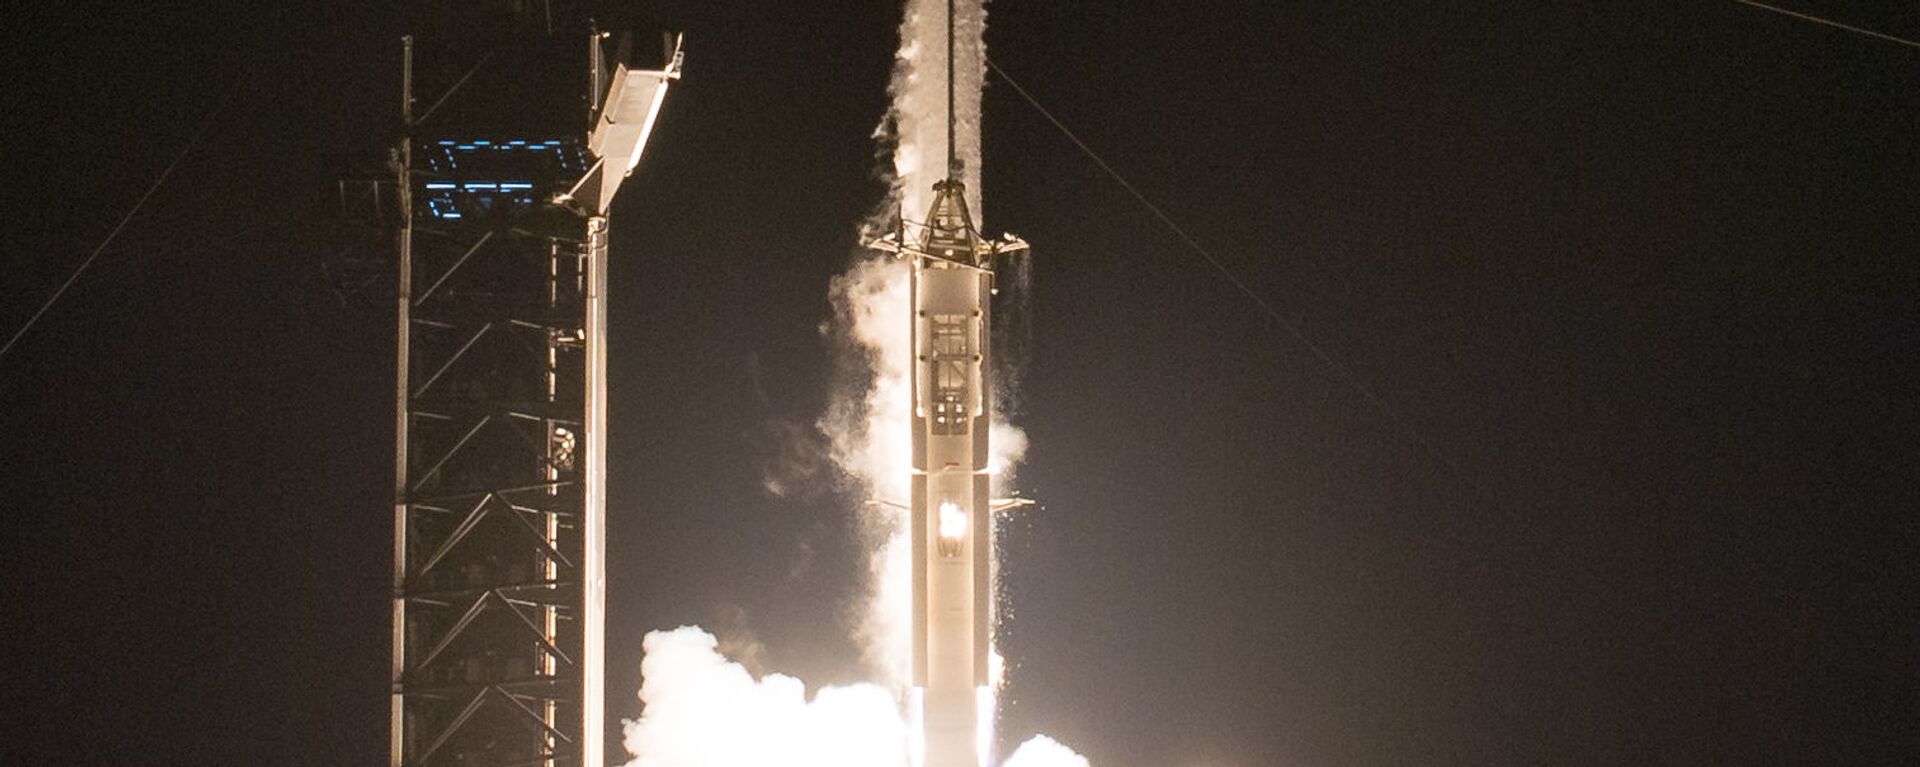 إطلاق مركبة سبيس إكس والتي تحمل اسم كرو دراغون عن طريق صاروخ فالكون 9، من مركز كينيدي للفضاء التابع لناسا في كيب كانافيرال بولاية فلوريدا، الولايات المتحدة 16 نوفمبر 2020 - سبوتنيك عربي, 1920, 26.07.2022